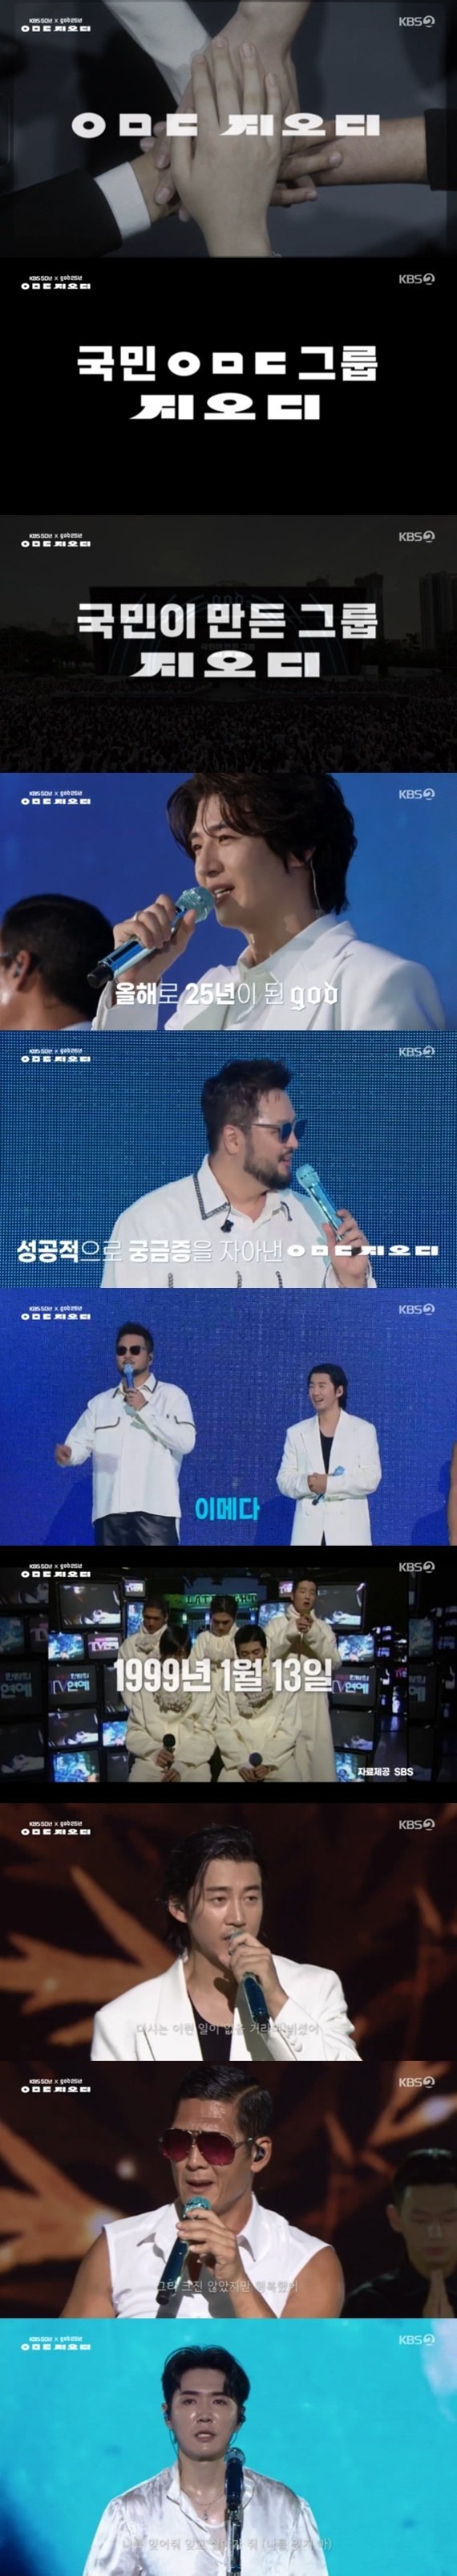 KBS2 'KBS 대기획 ㅇㅁㄷ 지오디' 캡처